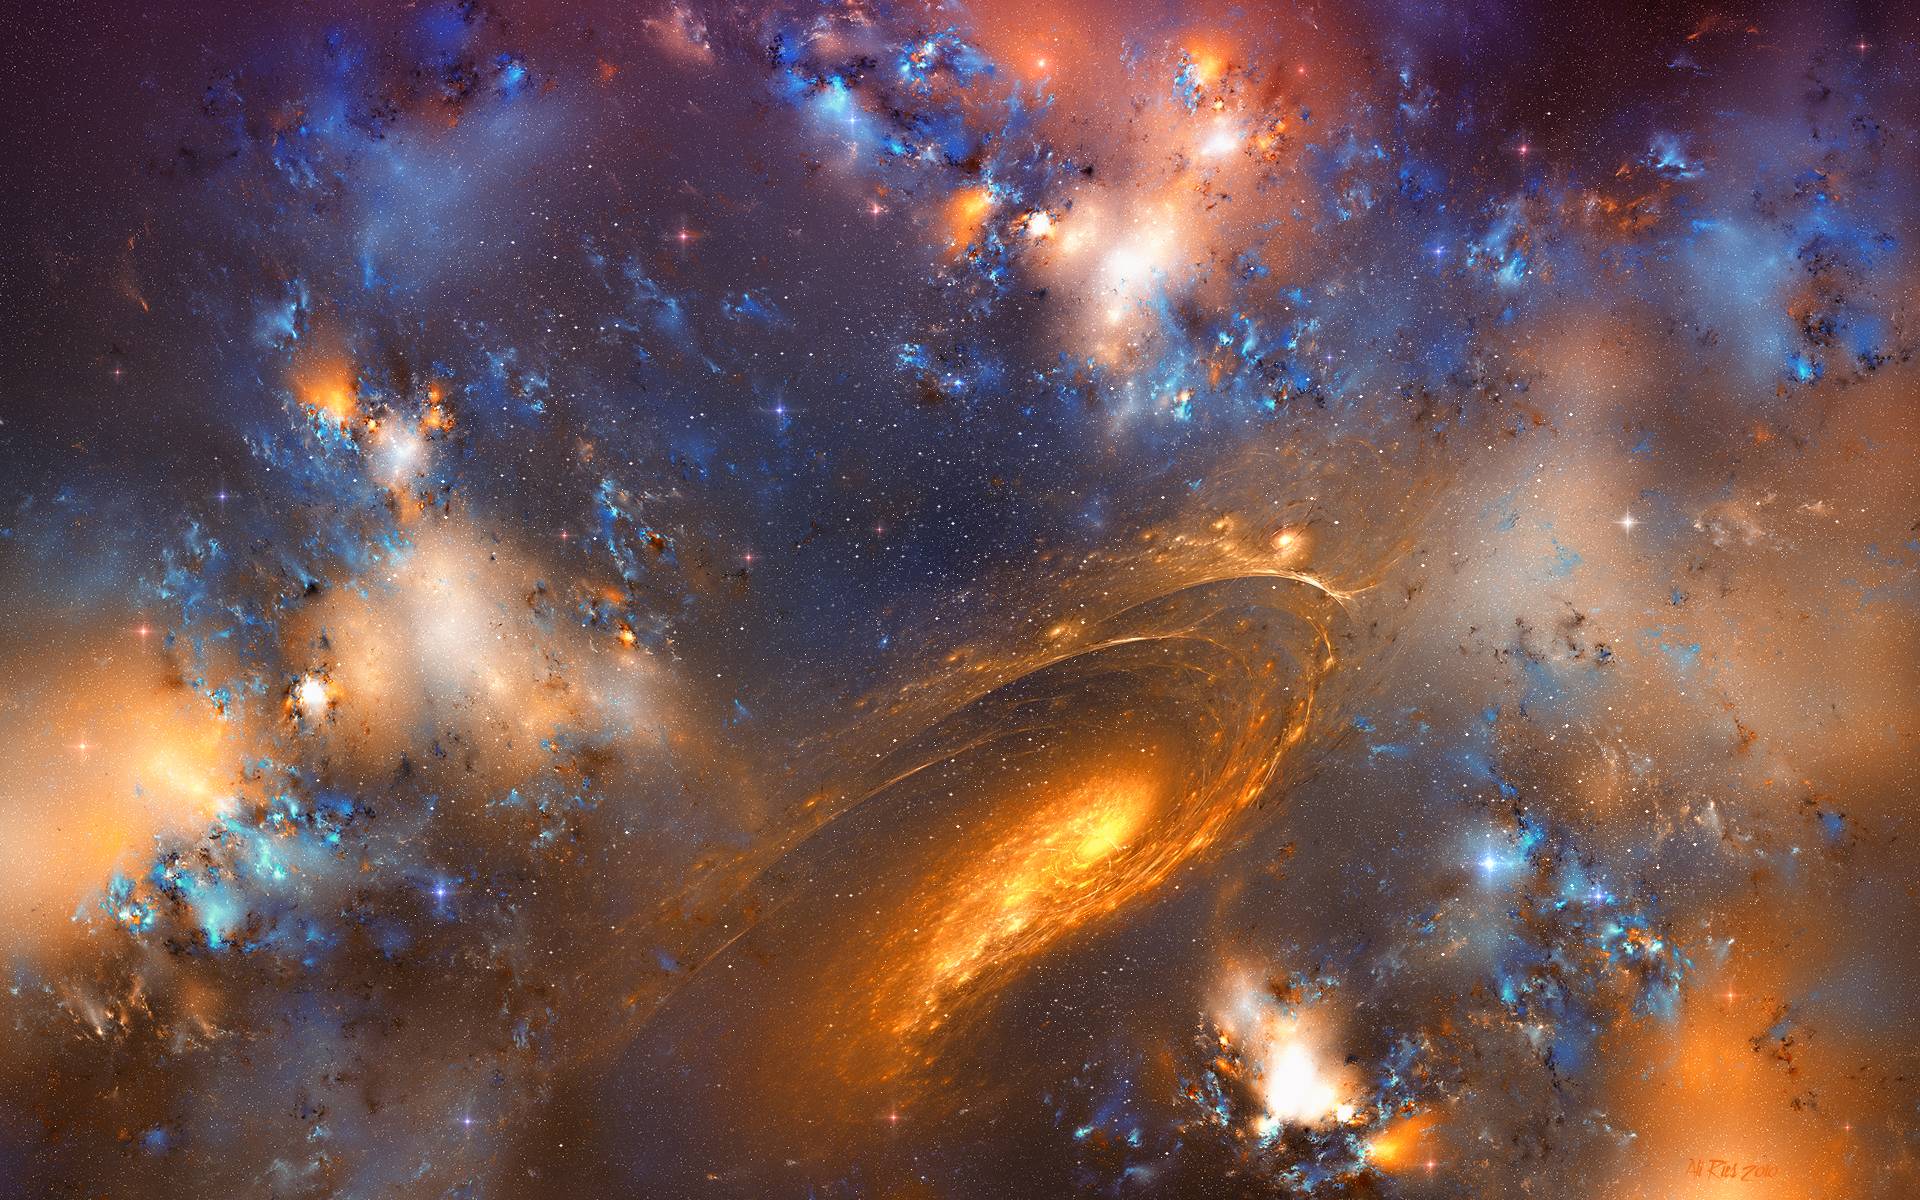 Andromeda Galaxy HD Wallpaper. Best Wallpaper Fan. Download Free